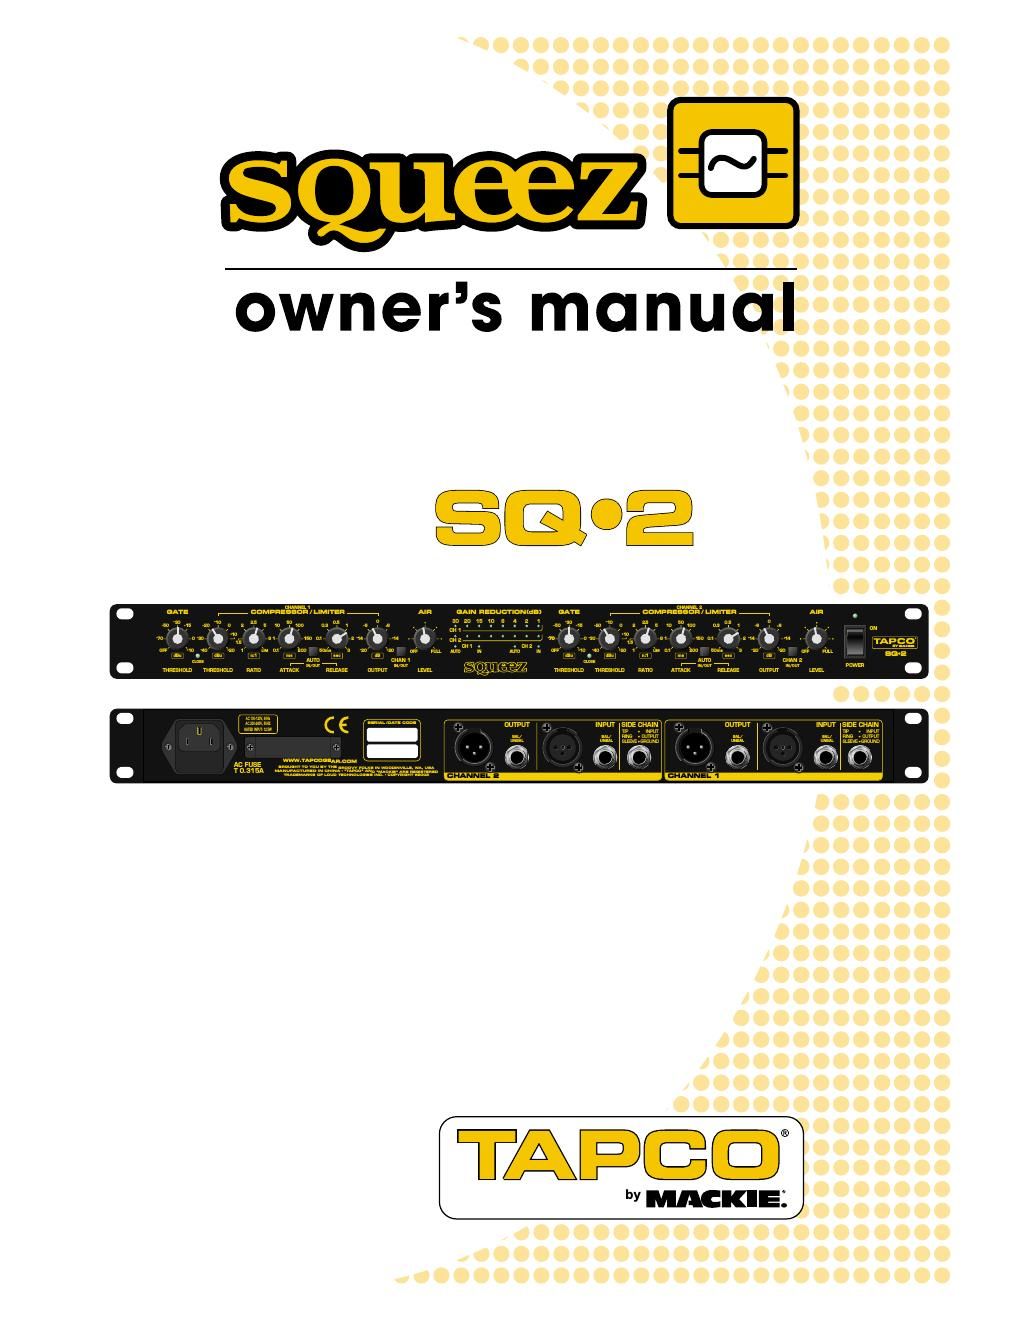 tapco sq 2 owners manual